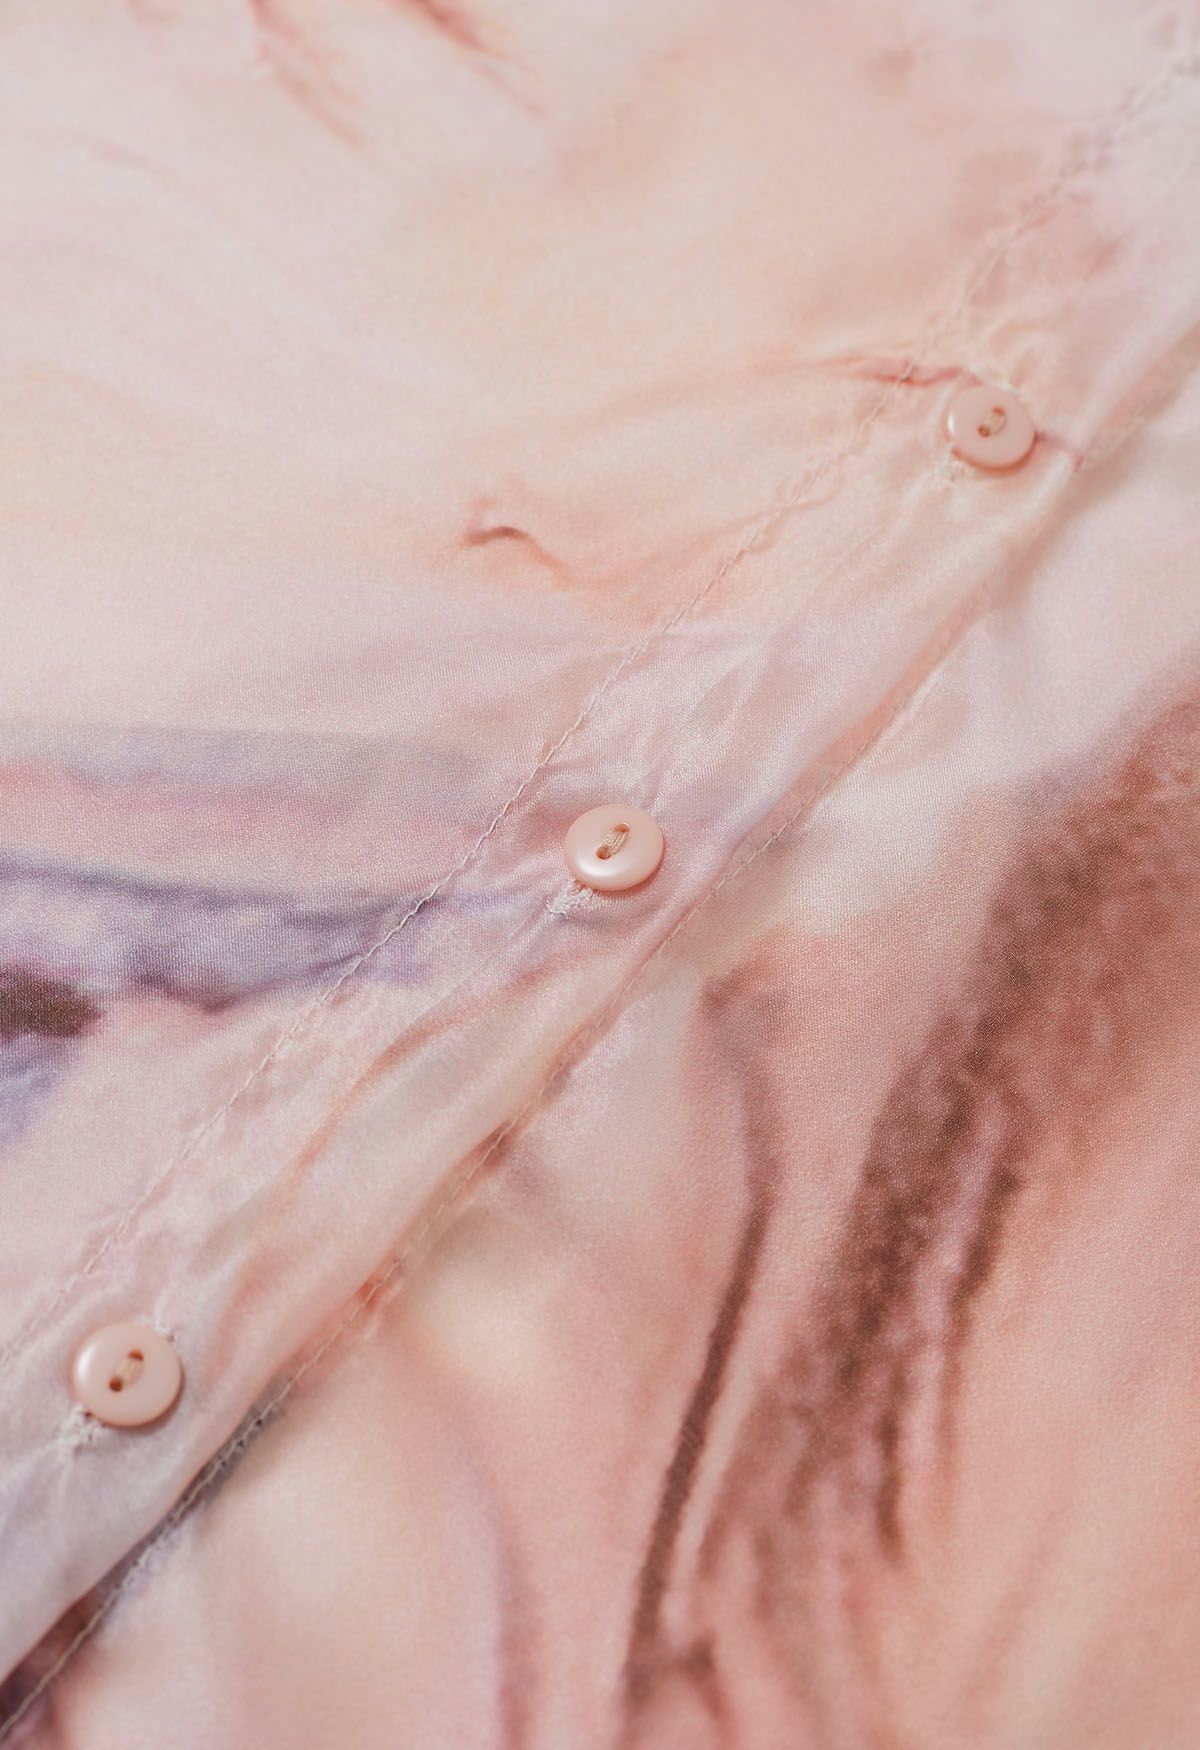 Elegante camisa transparente floral de acuarela con lazo en coral